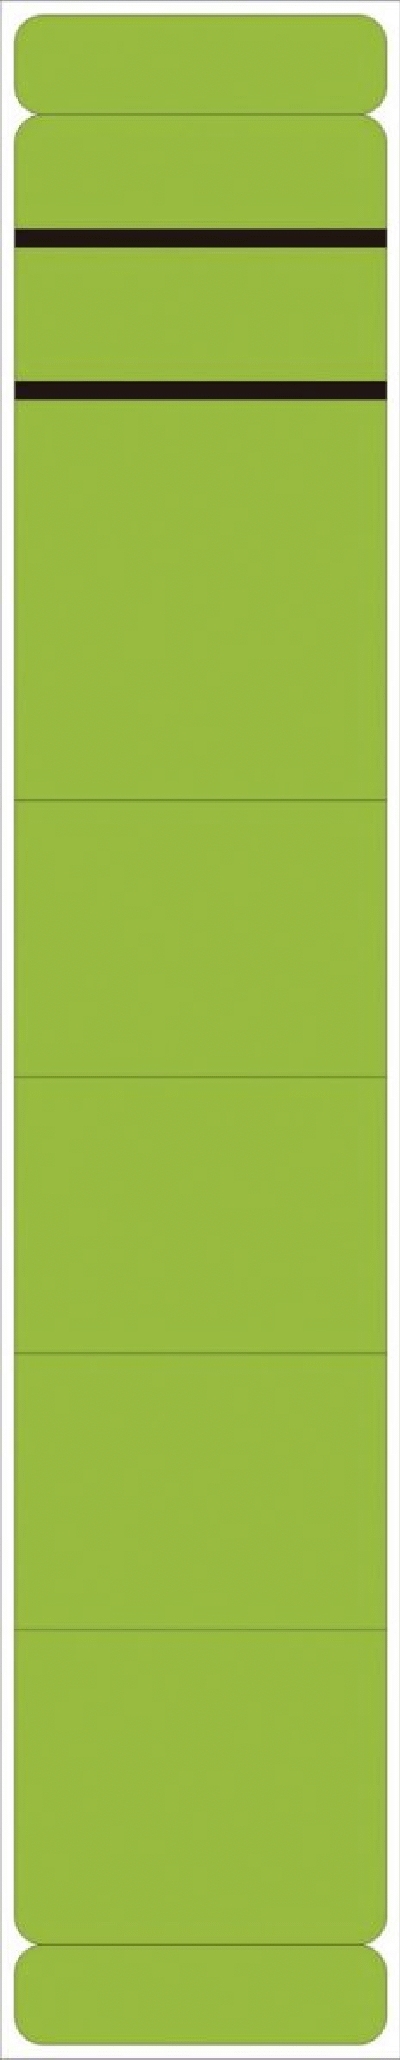 Neutral Ordner Rückenschilder - schmal/lang, 190 Stück, grün